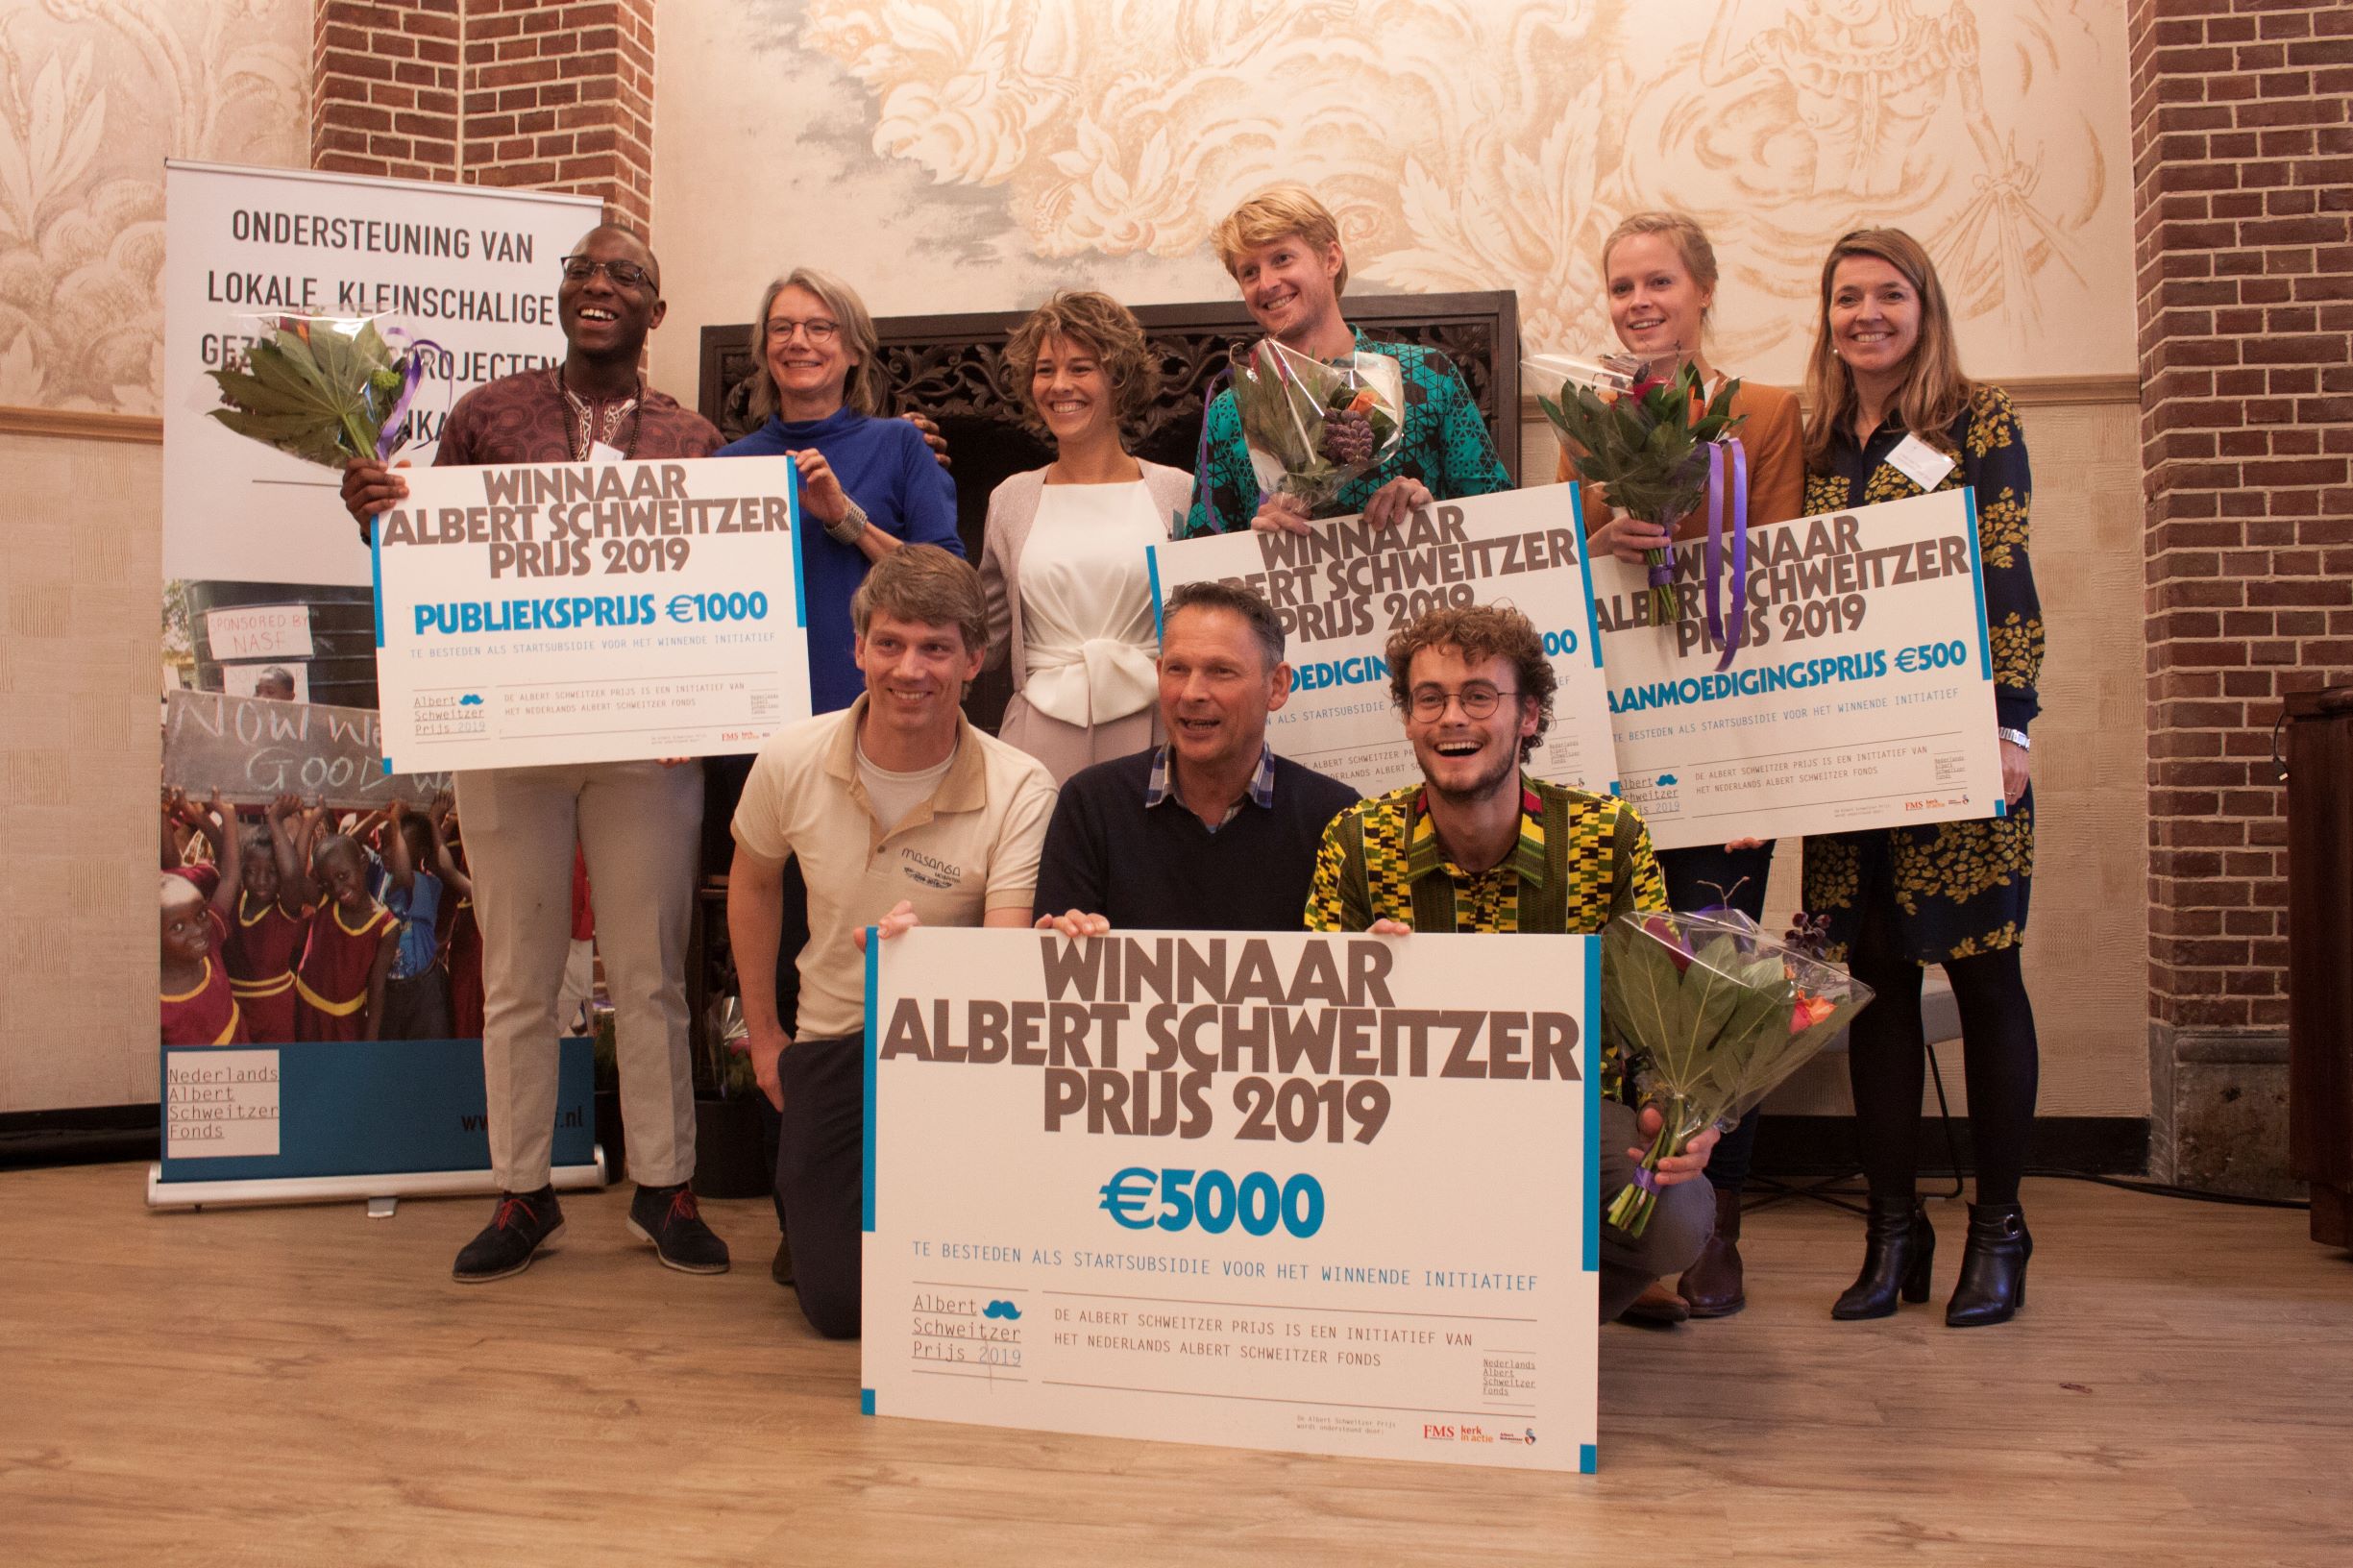 Albert Schweitzer Fonds – winnaars prijs 2019-1